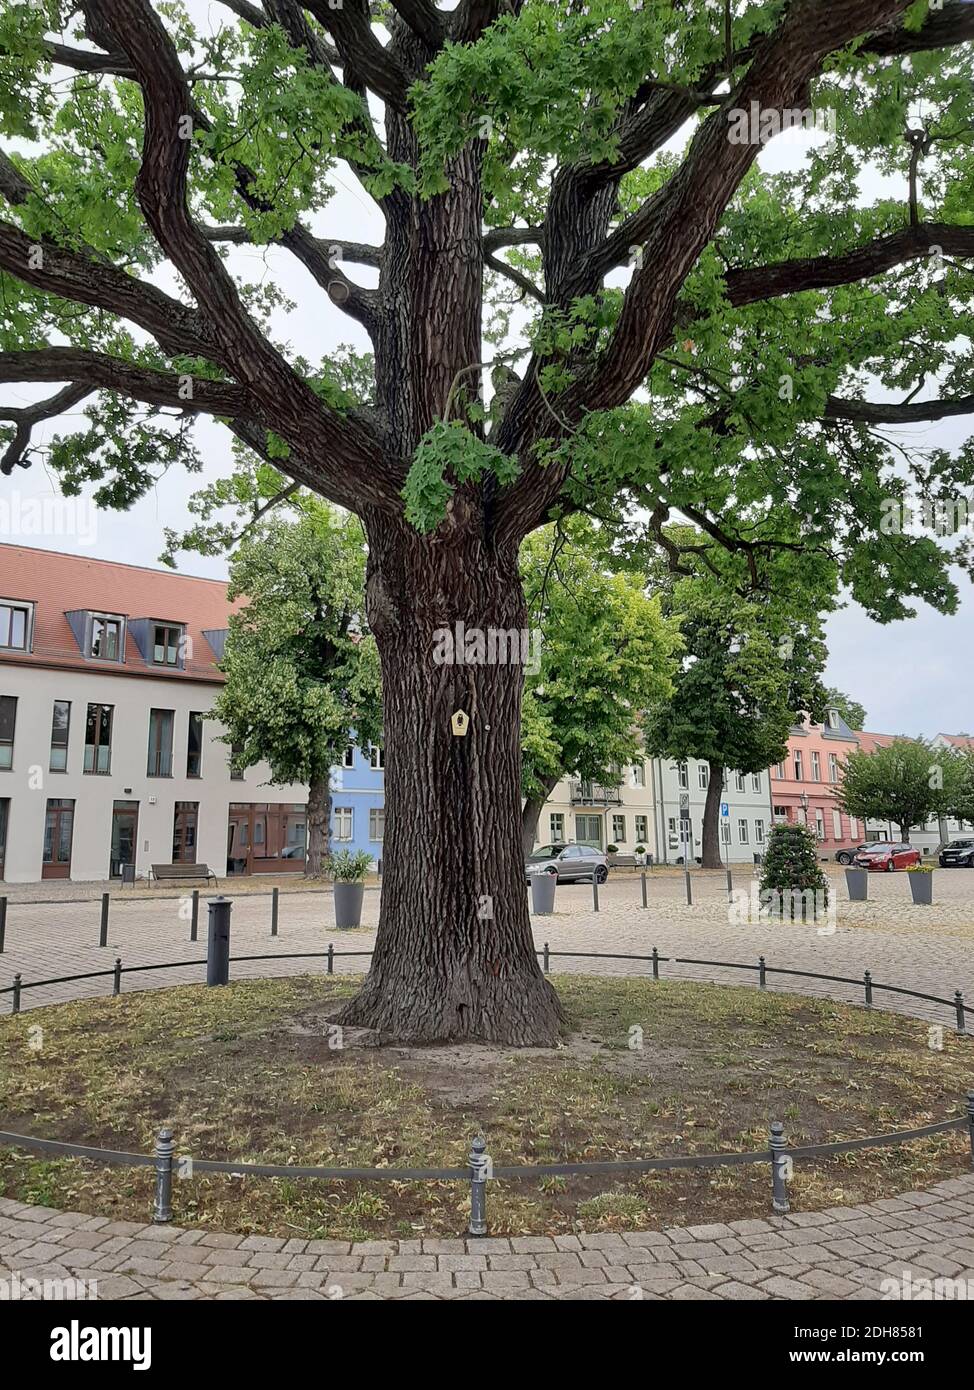 Chêne commun, chêne pédonculé, chêne anglais (Quercus robur. Quercus pedunculata), site naturel avec bouton sur une place de marché, Allemagne, Brandebourg Banque D'Images